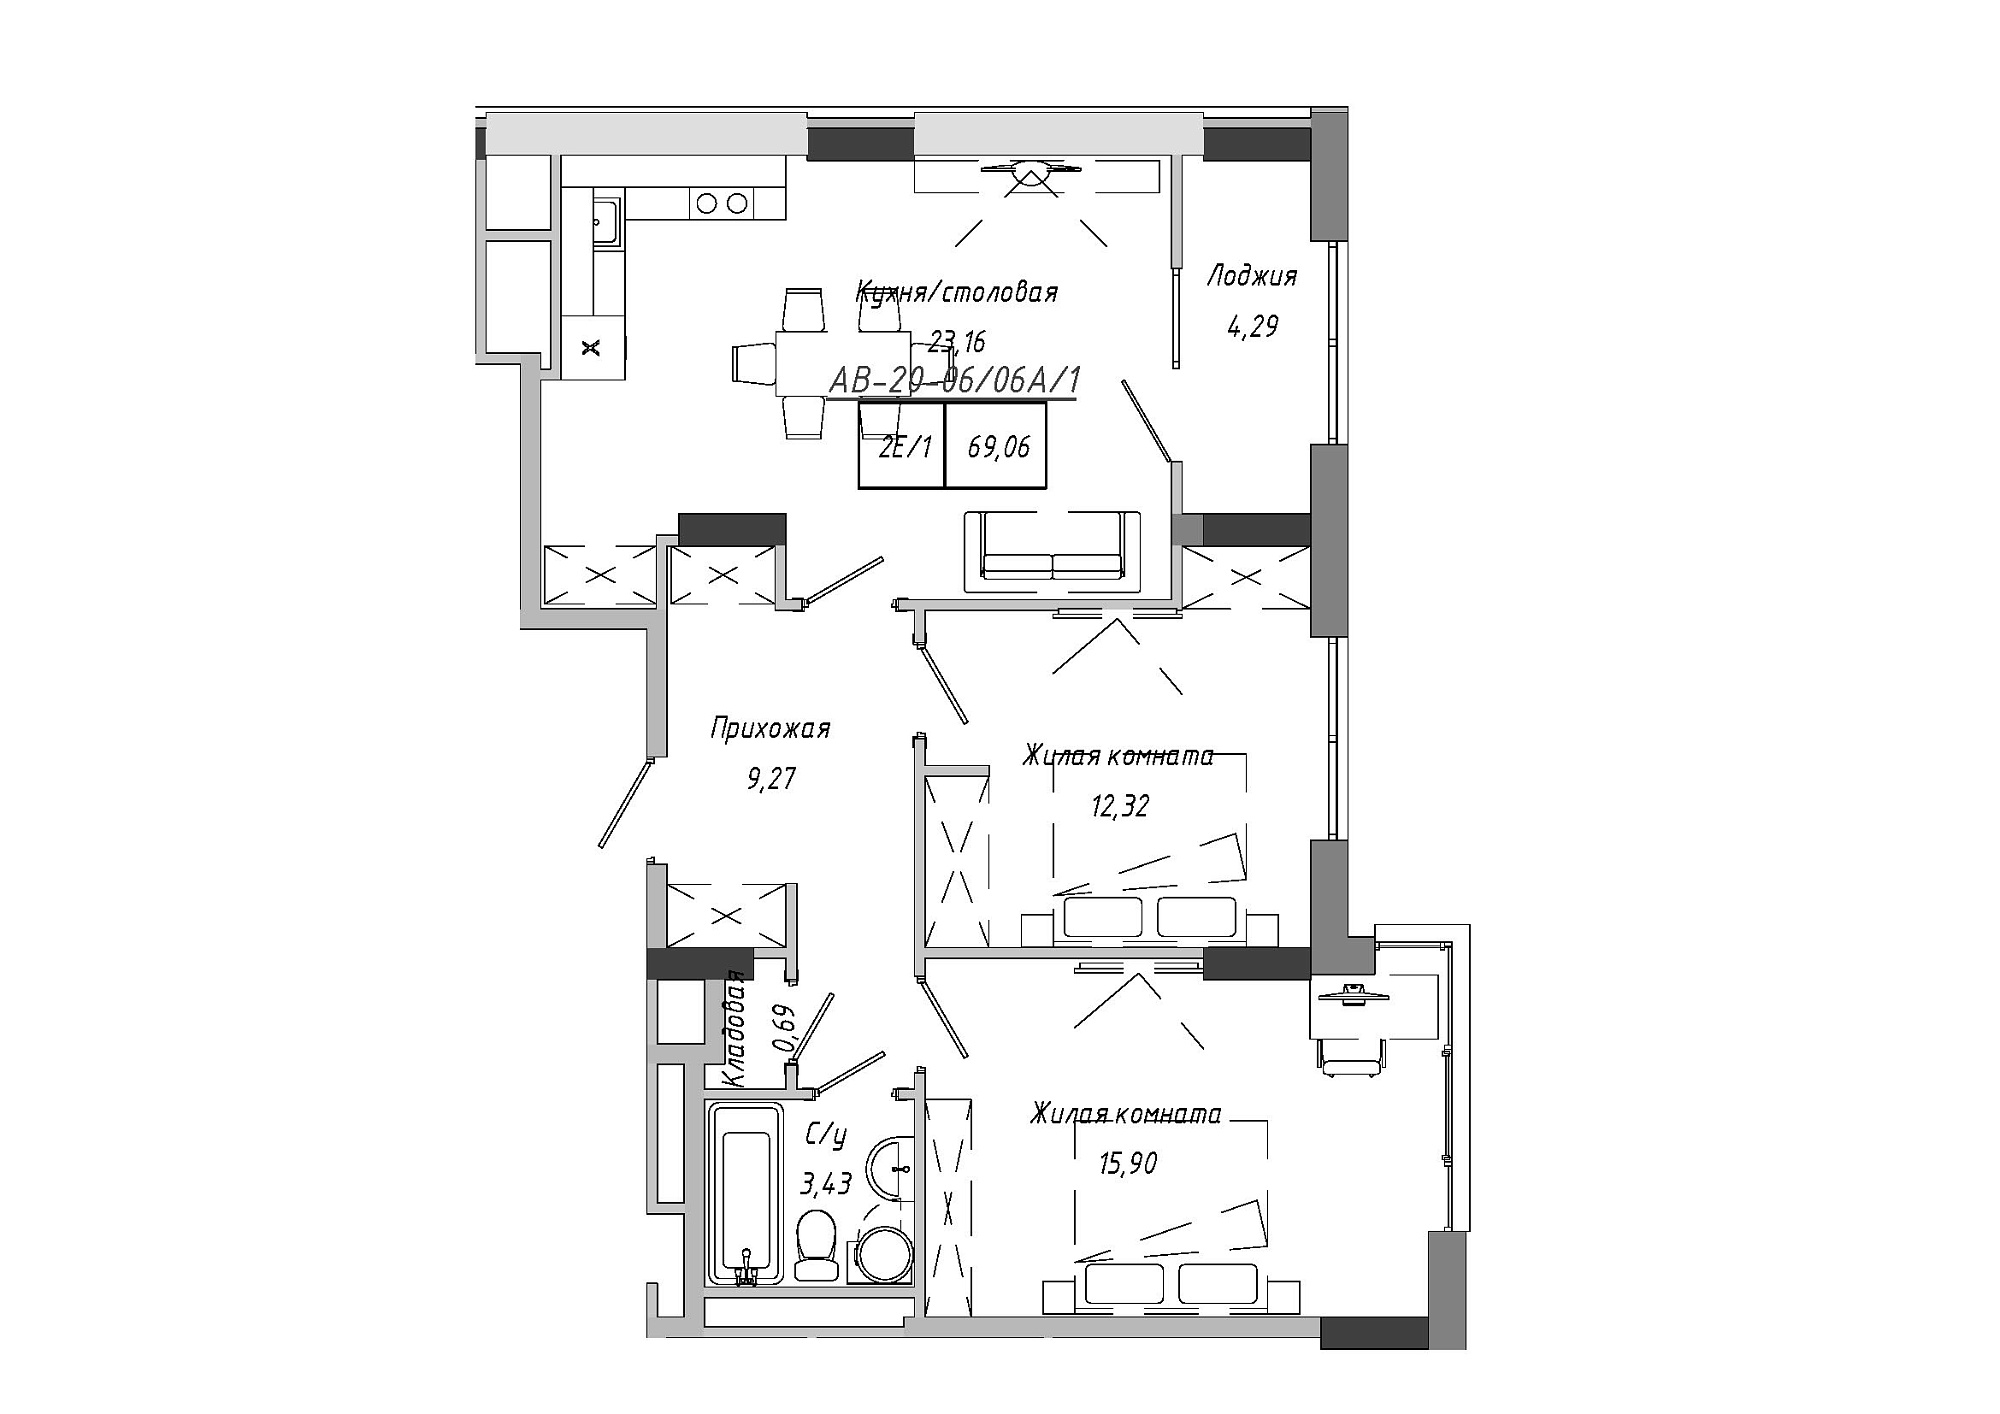 Планування 2-к квартира площею 42.85м2, AB-20-06/0006а.